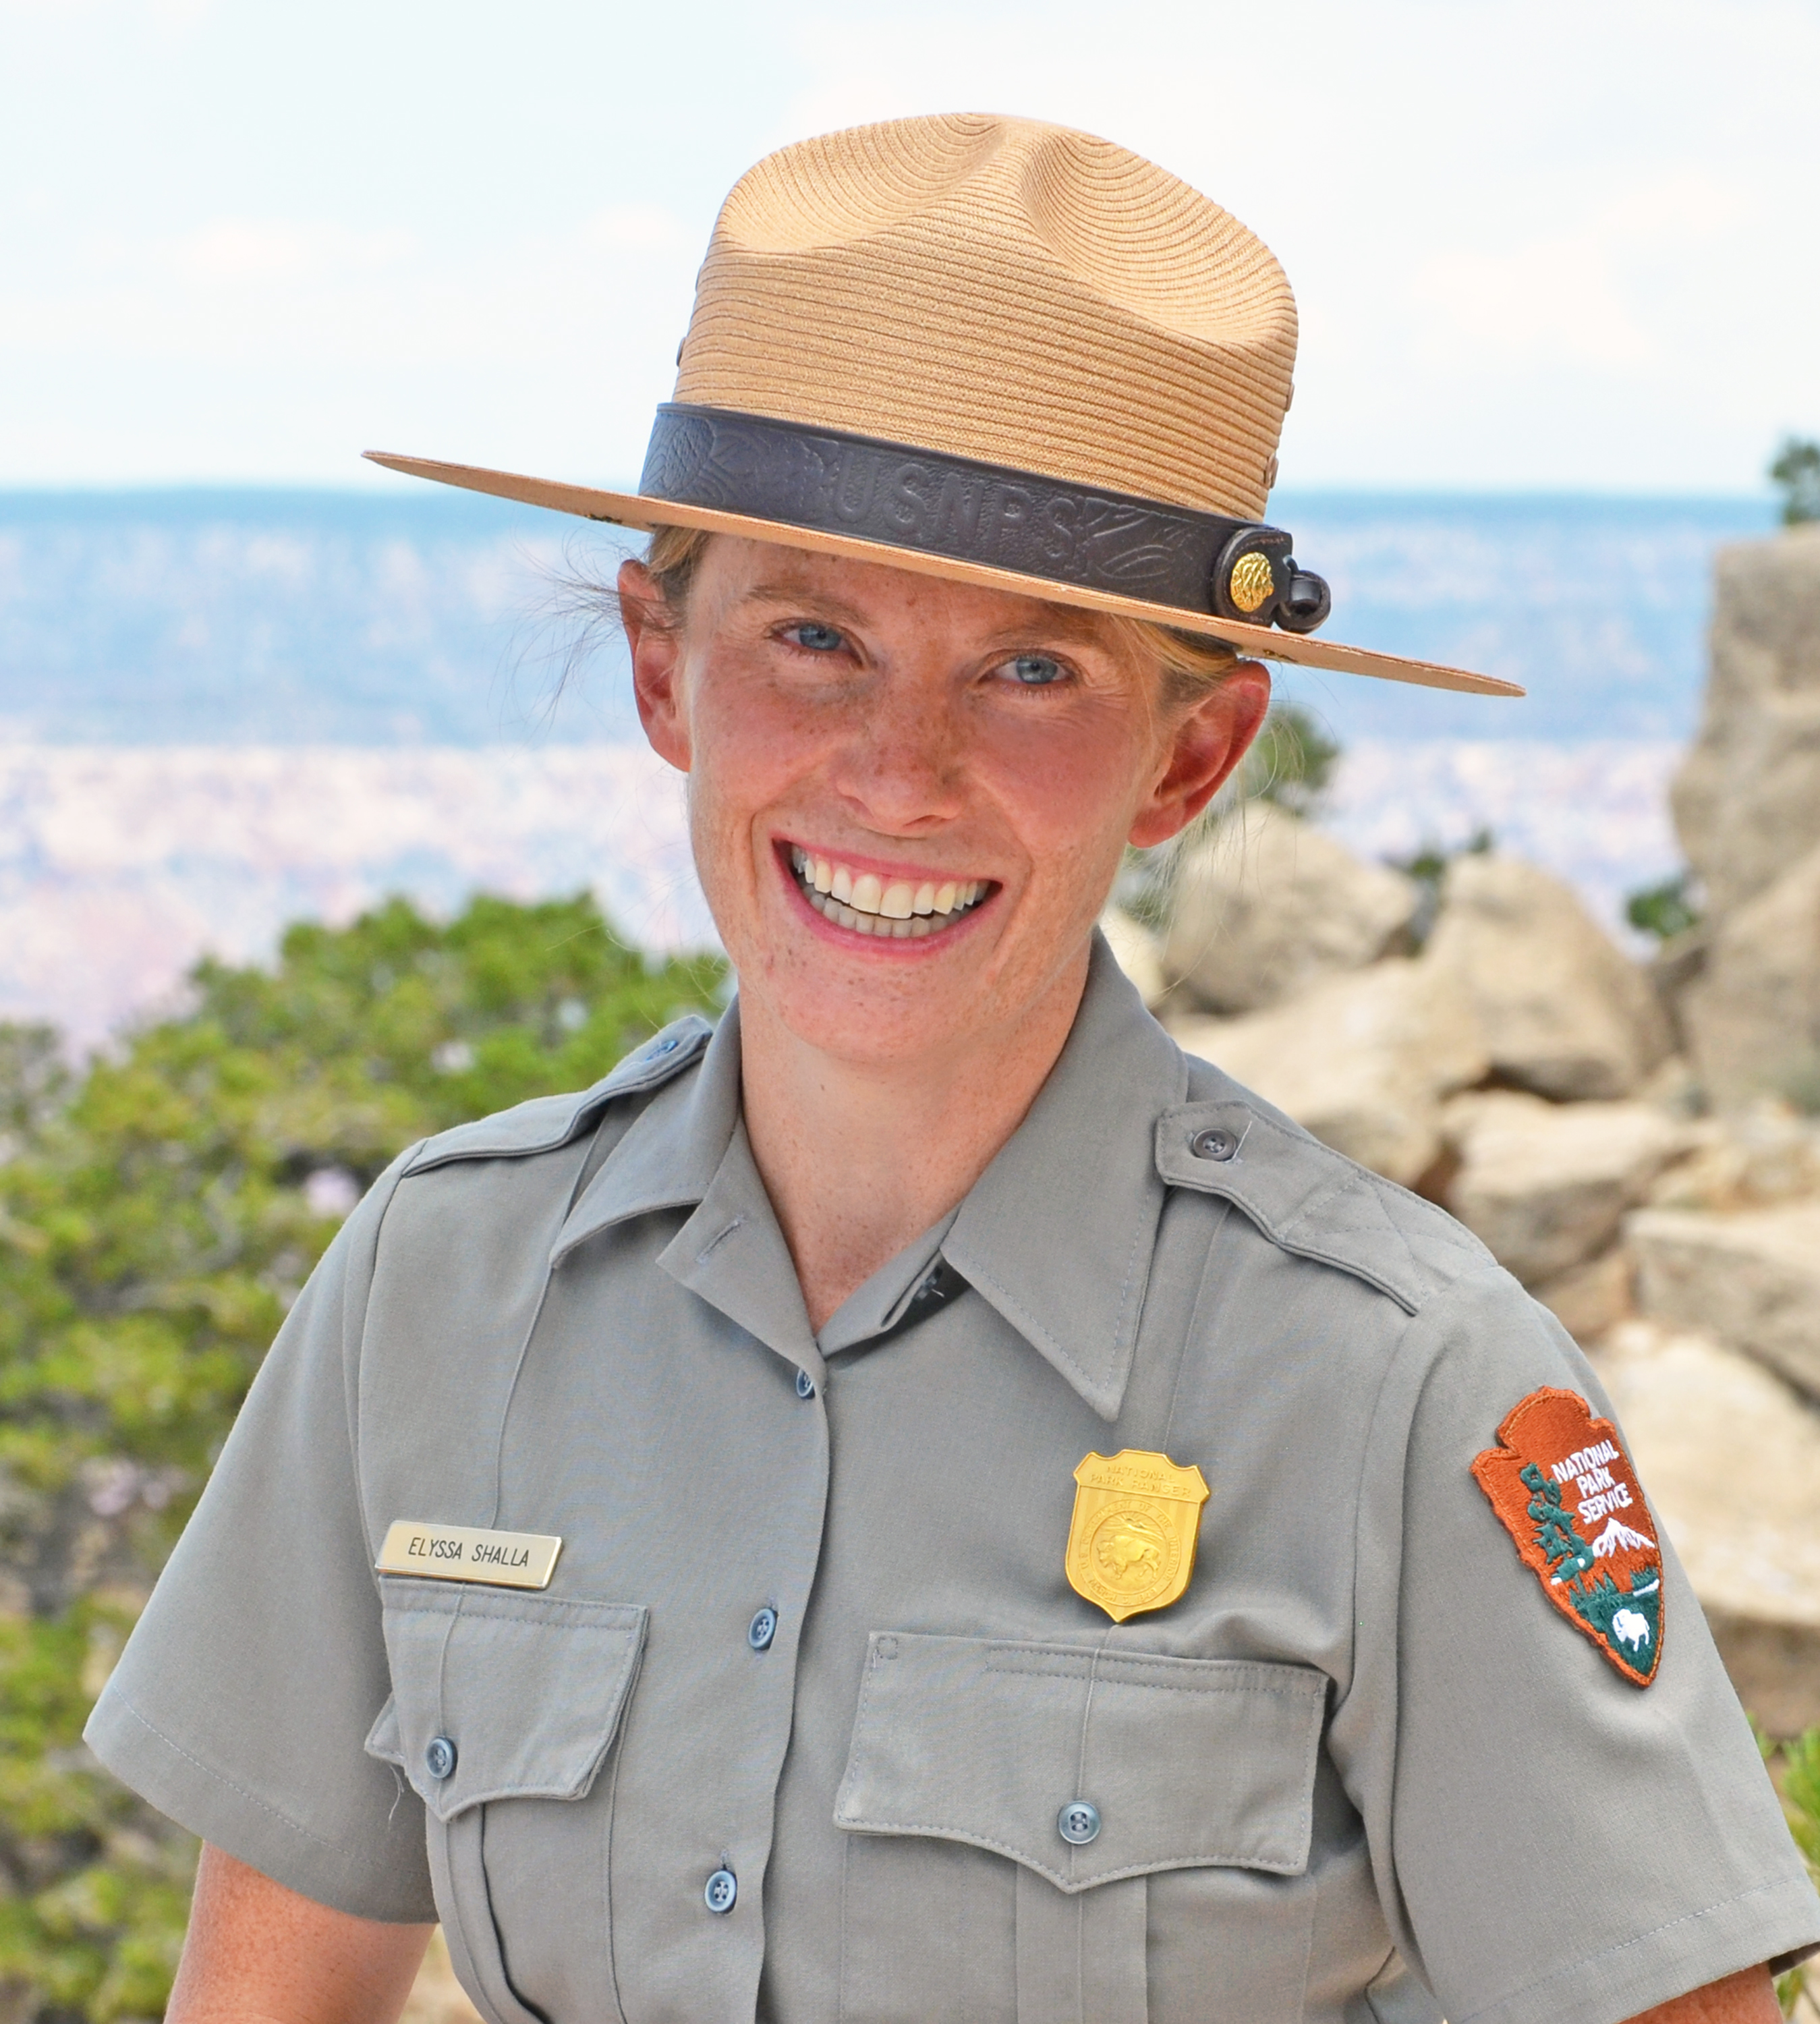 Elyssa Shalla wearing her NPS ranger hat